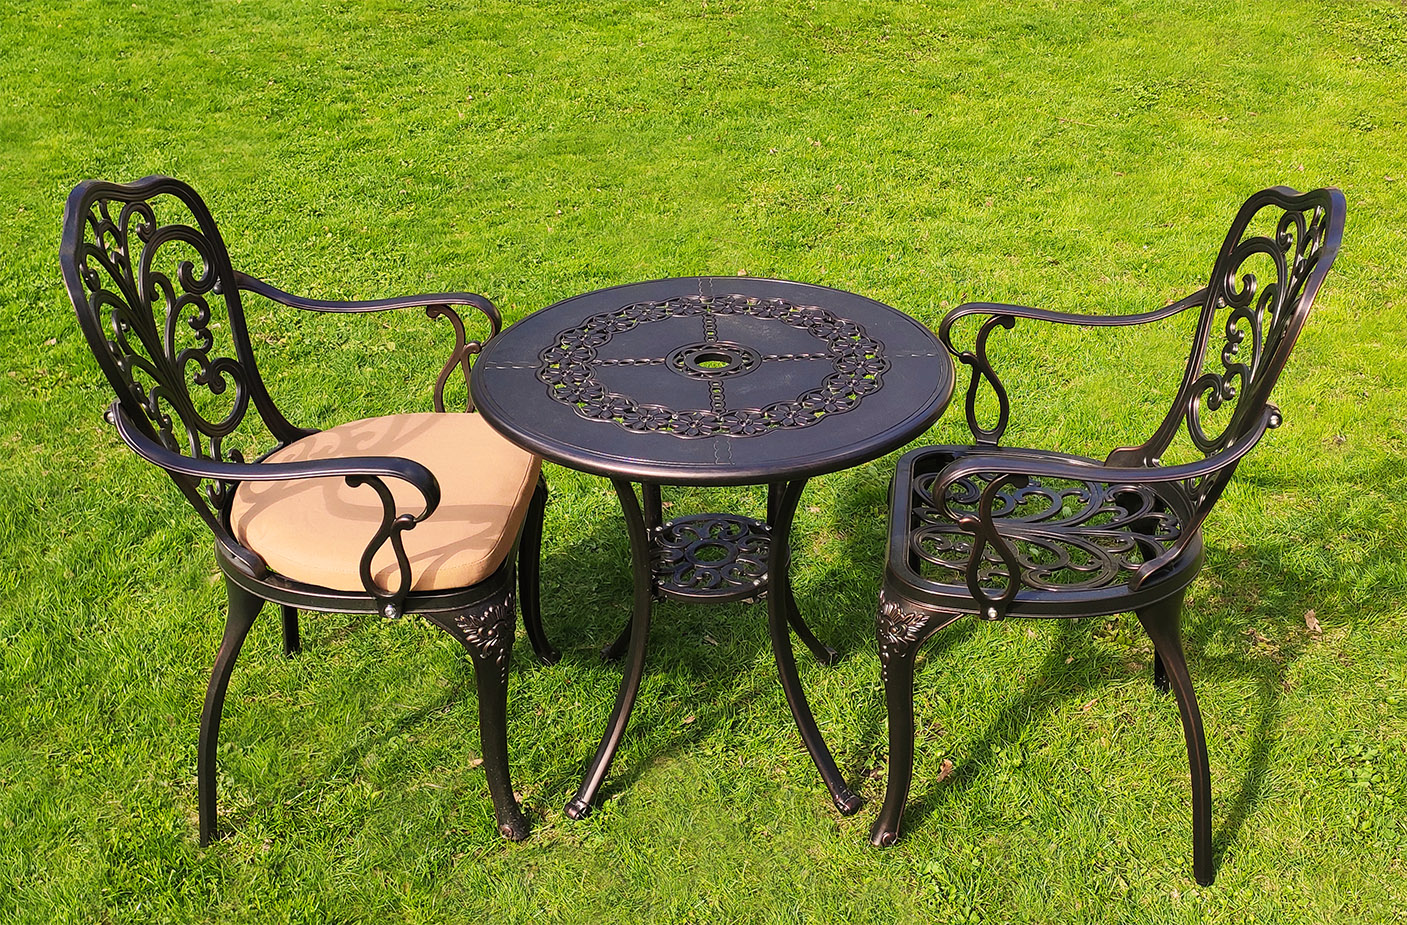 Садовая мебель из металла, кованый стол и стулья для сада, чугунная мебель из металла, столы и стулья для сезонных площадок кафе, мебель для пансионатов и гостиниц, круглый стол для дачи в беседку